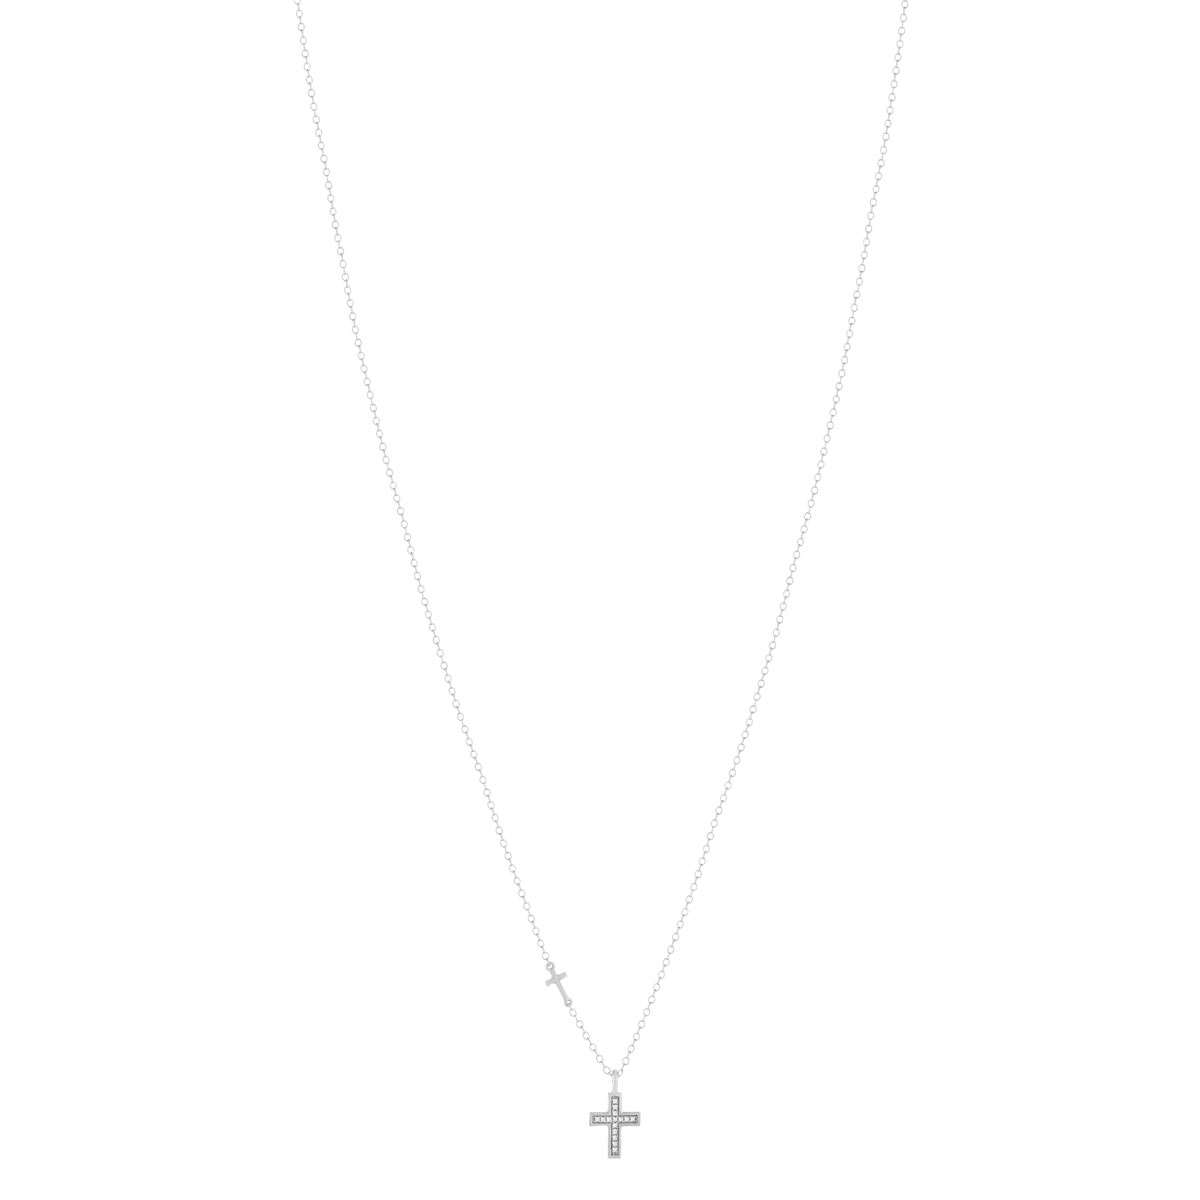 Collier or blanc 375, motif croix, diamants. Longueur 45 cm - vue 2